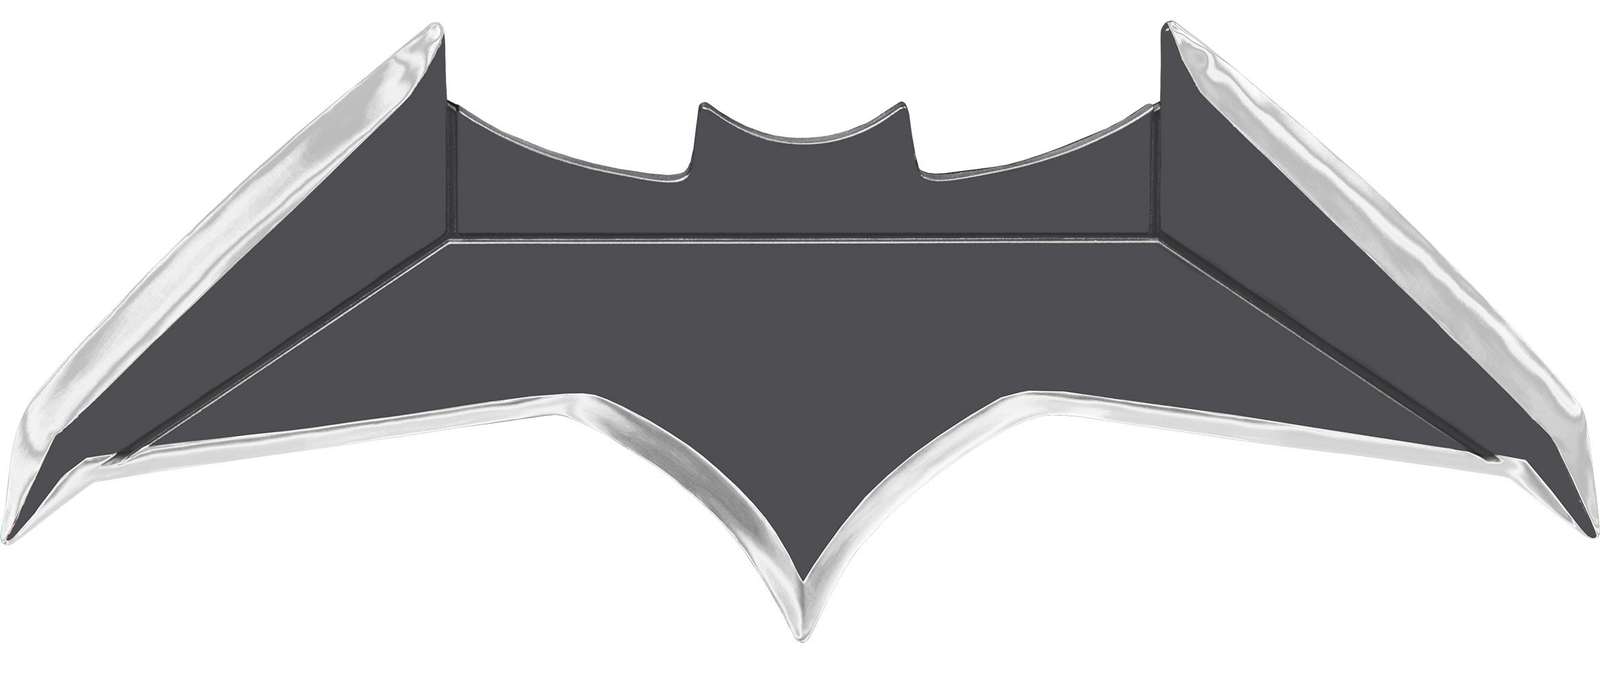 Batarang puzzle online a partir de fotografia